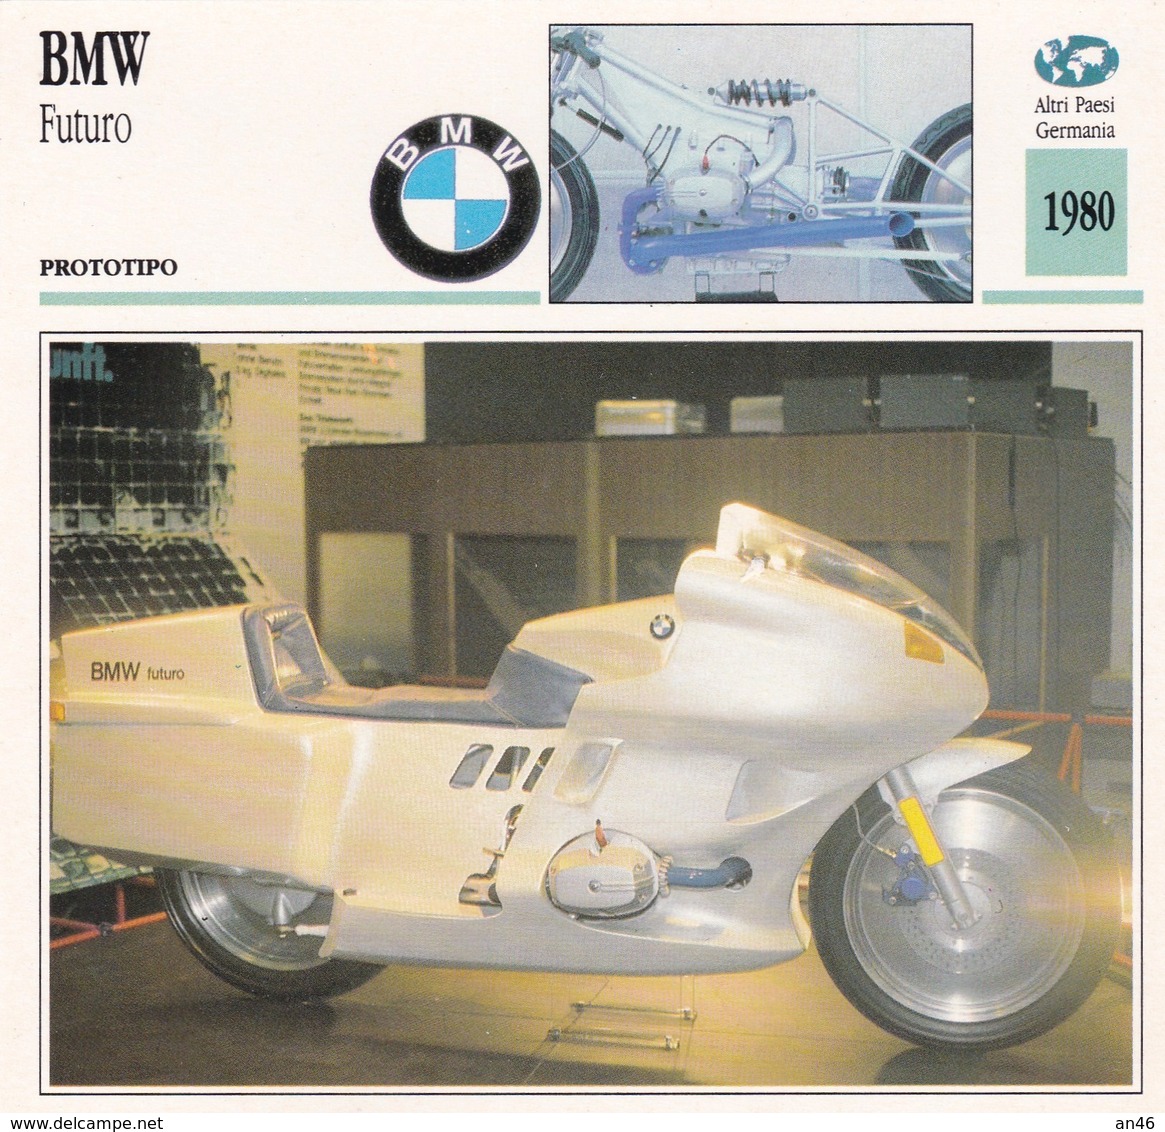 PRTOTIPO BMW FUTURO ALTRI PAESI GERMANIA 1980 DESCRIZIONE COMPLETA SUL RETRO AUTENTICA 100% - Advertising